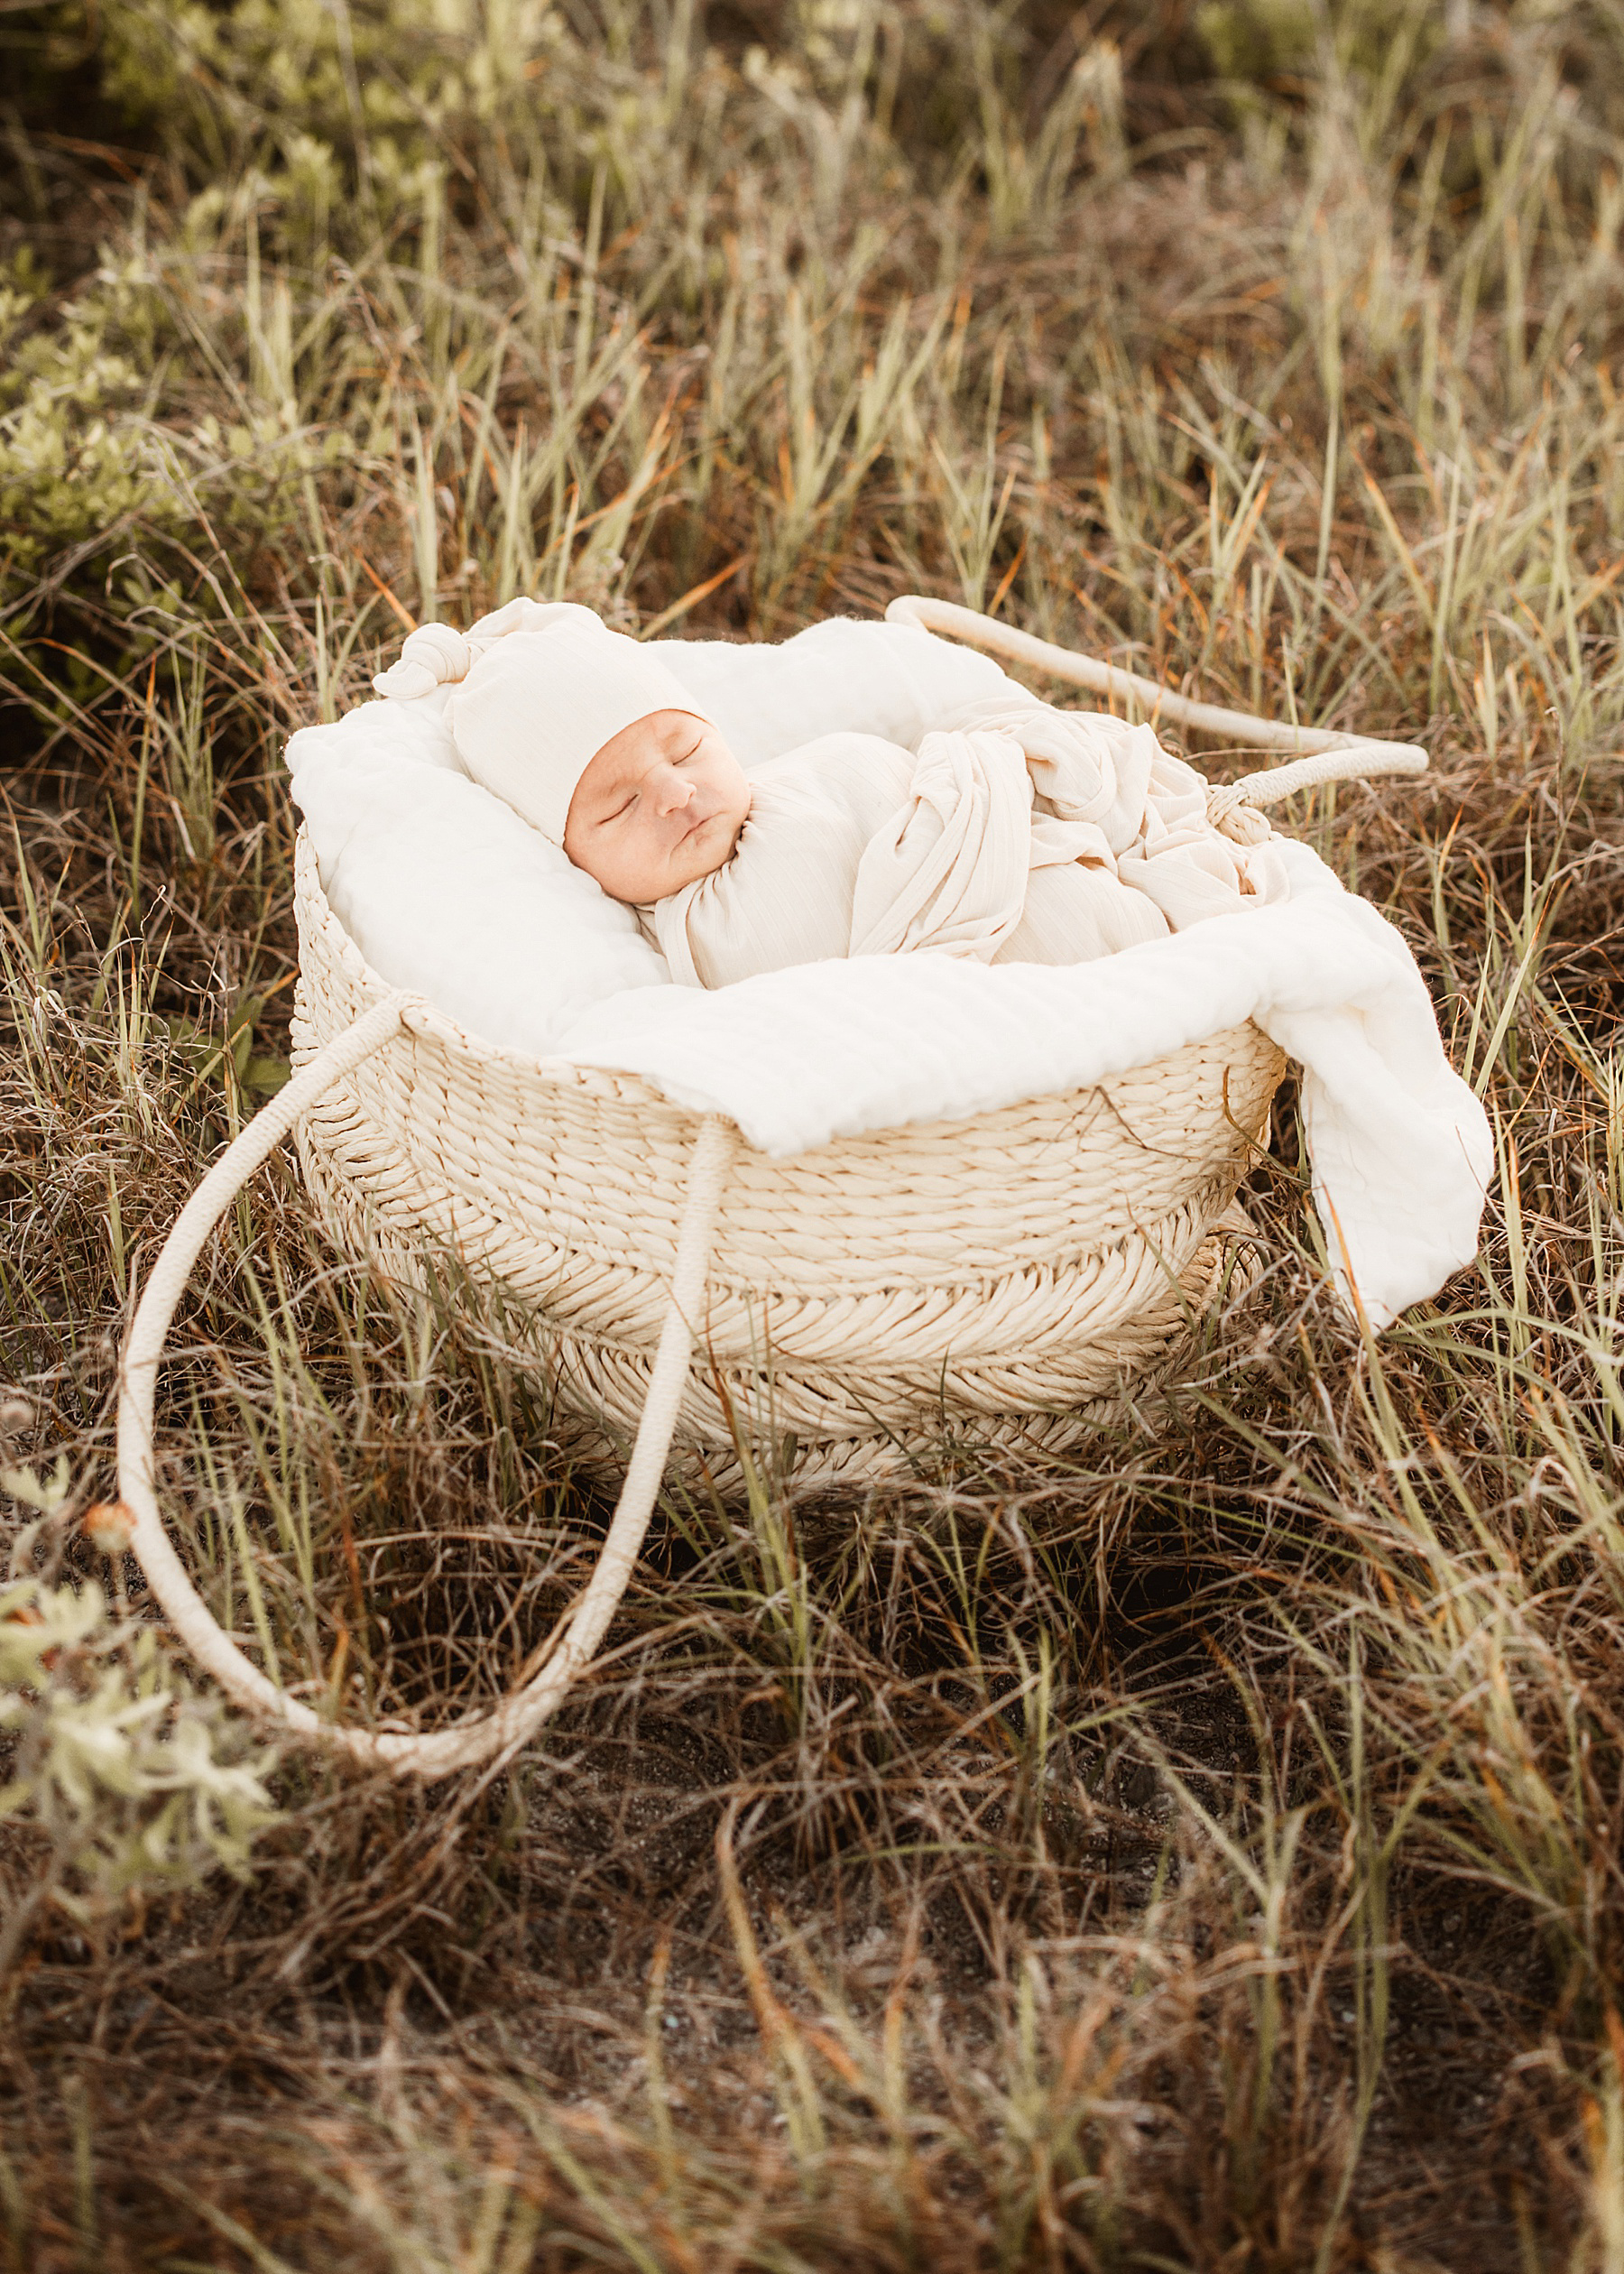 newborn baby girl wrapped in neutral swaddle in basket in an open grassy field